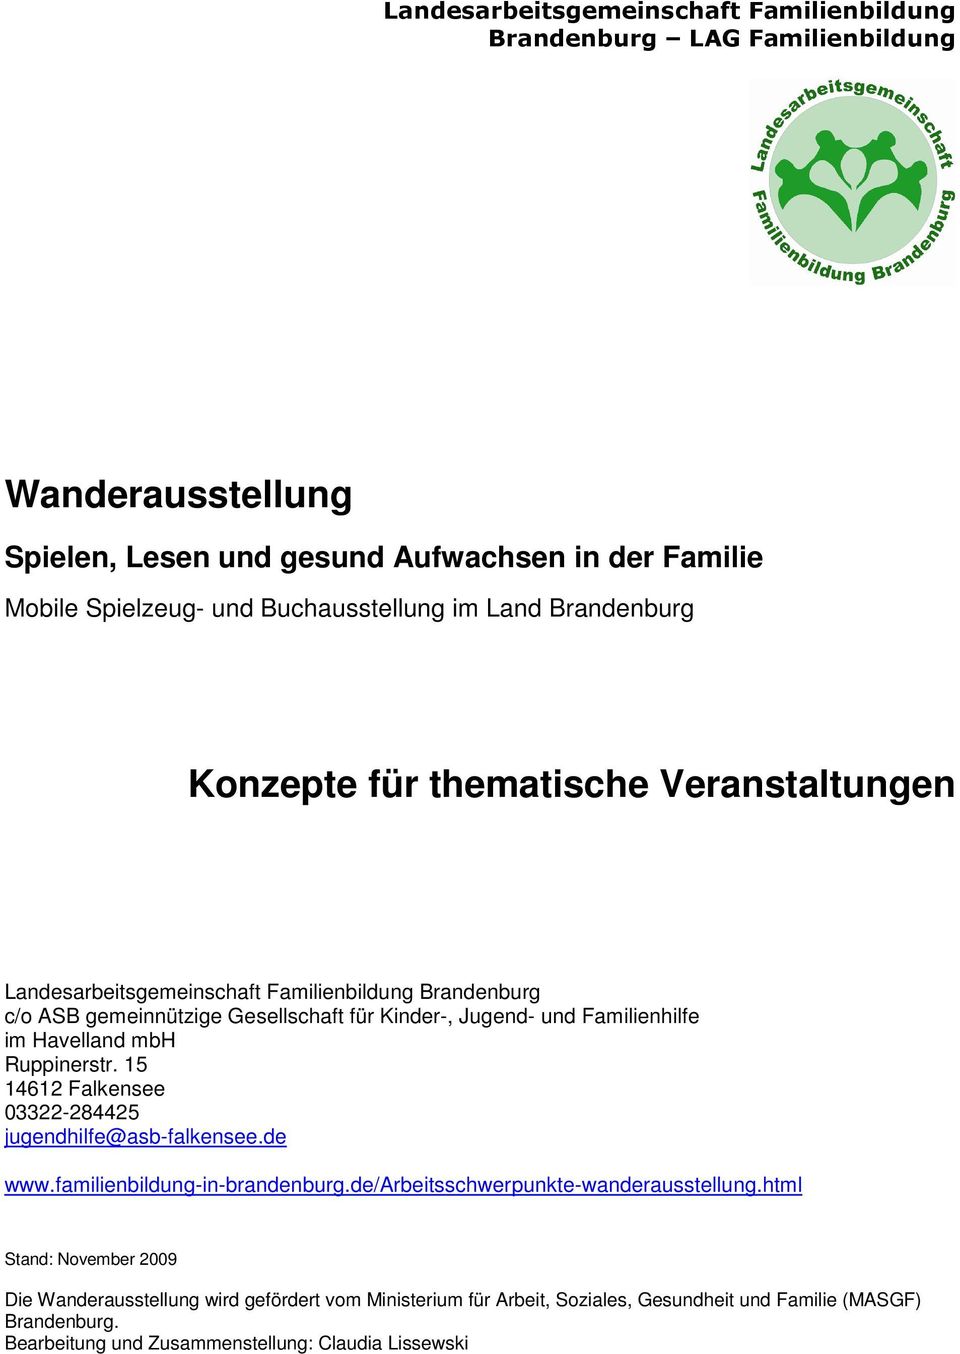 Familienhilfe im Havelland mbh Ruppinerstr. 15 14612 Falkensee 03322-284425 jugendhilfe@asb-falkensee.de www.familienbildung-in-brandenburg.de/arbeitsschwerpunkte-wanderausstellung.